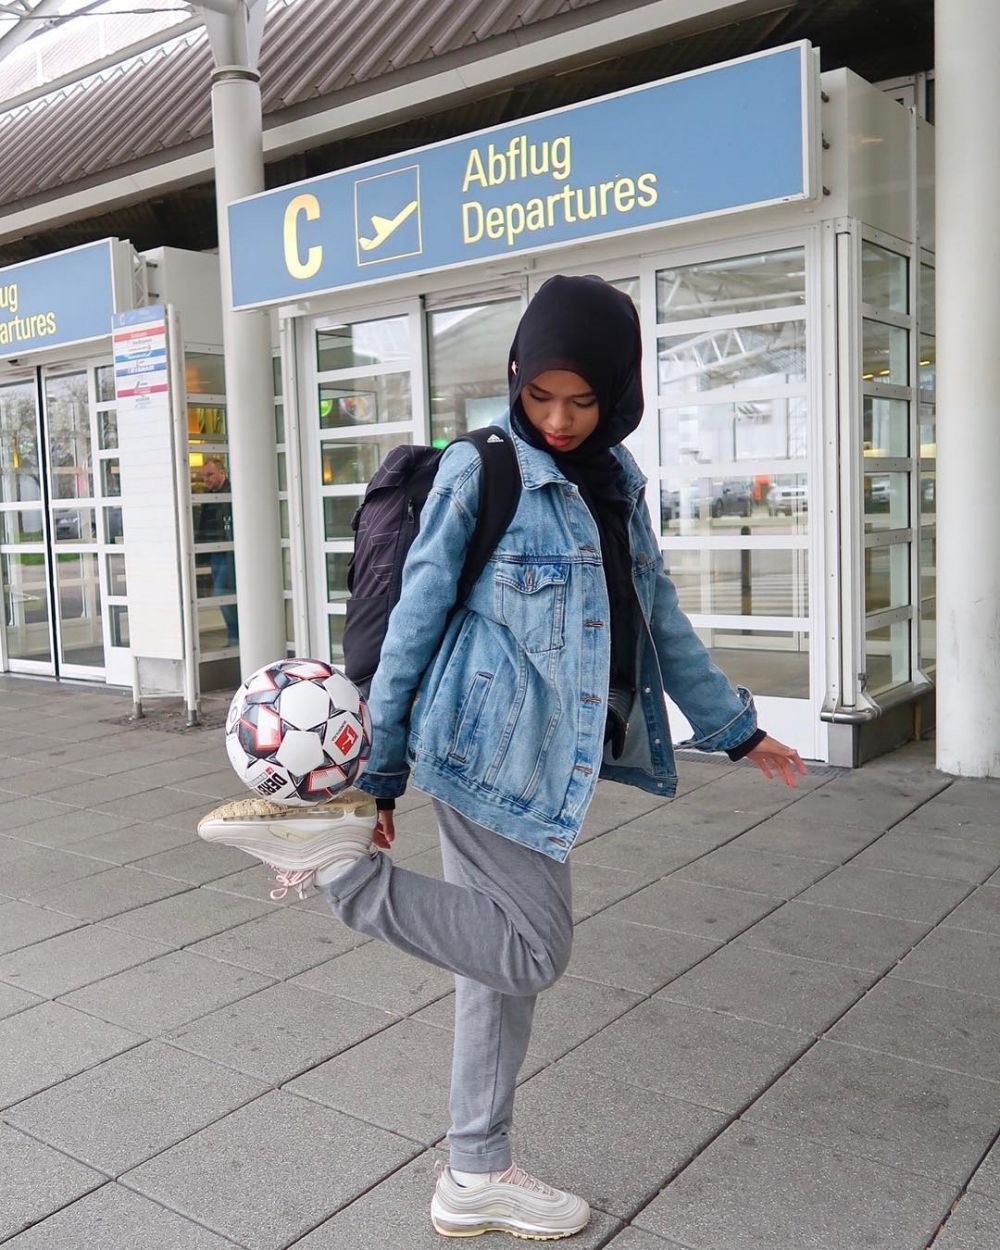 12 Pesona Qhouirunnisa, hijaber yang jago freestyle bola